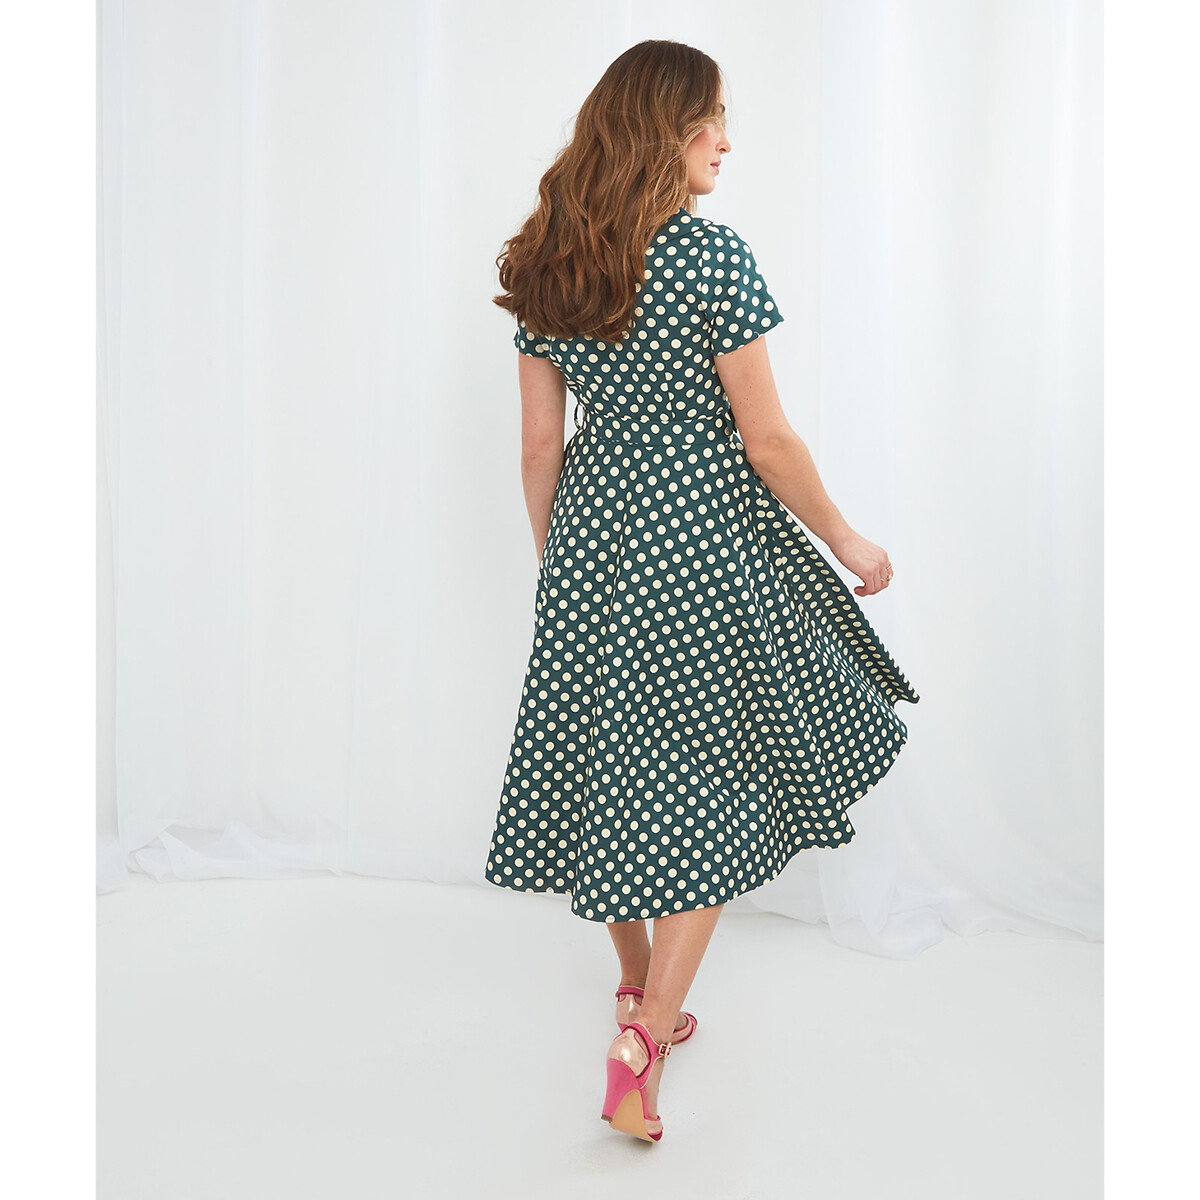 Платье-миди JOE BROWNS Платье-миди С расклешенным низом короткие рукава в горошек 42 зеленый, размер 42 - фото 3